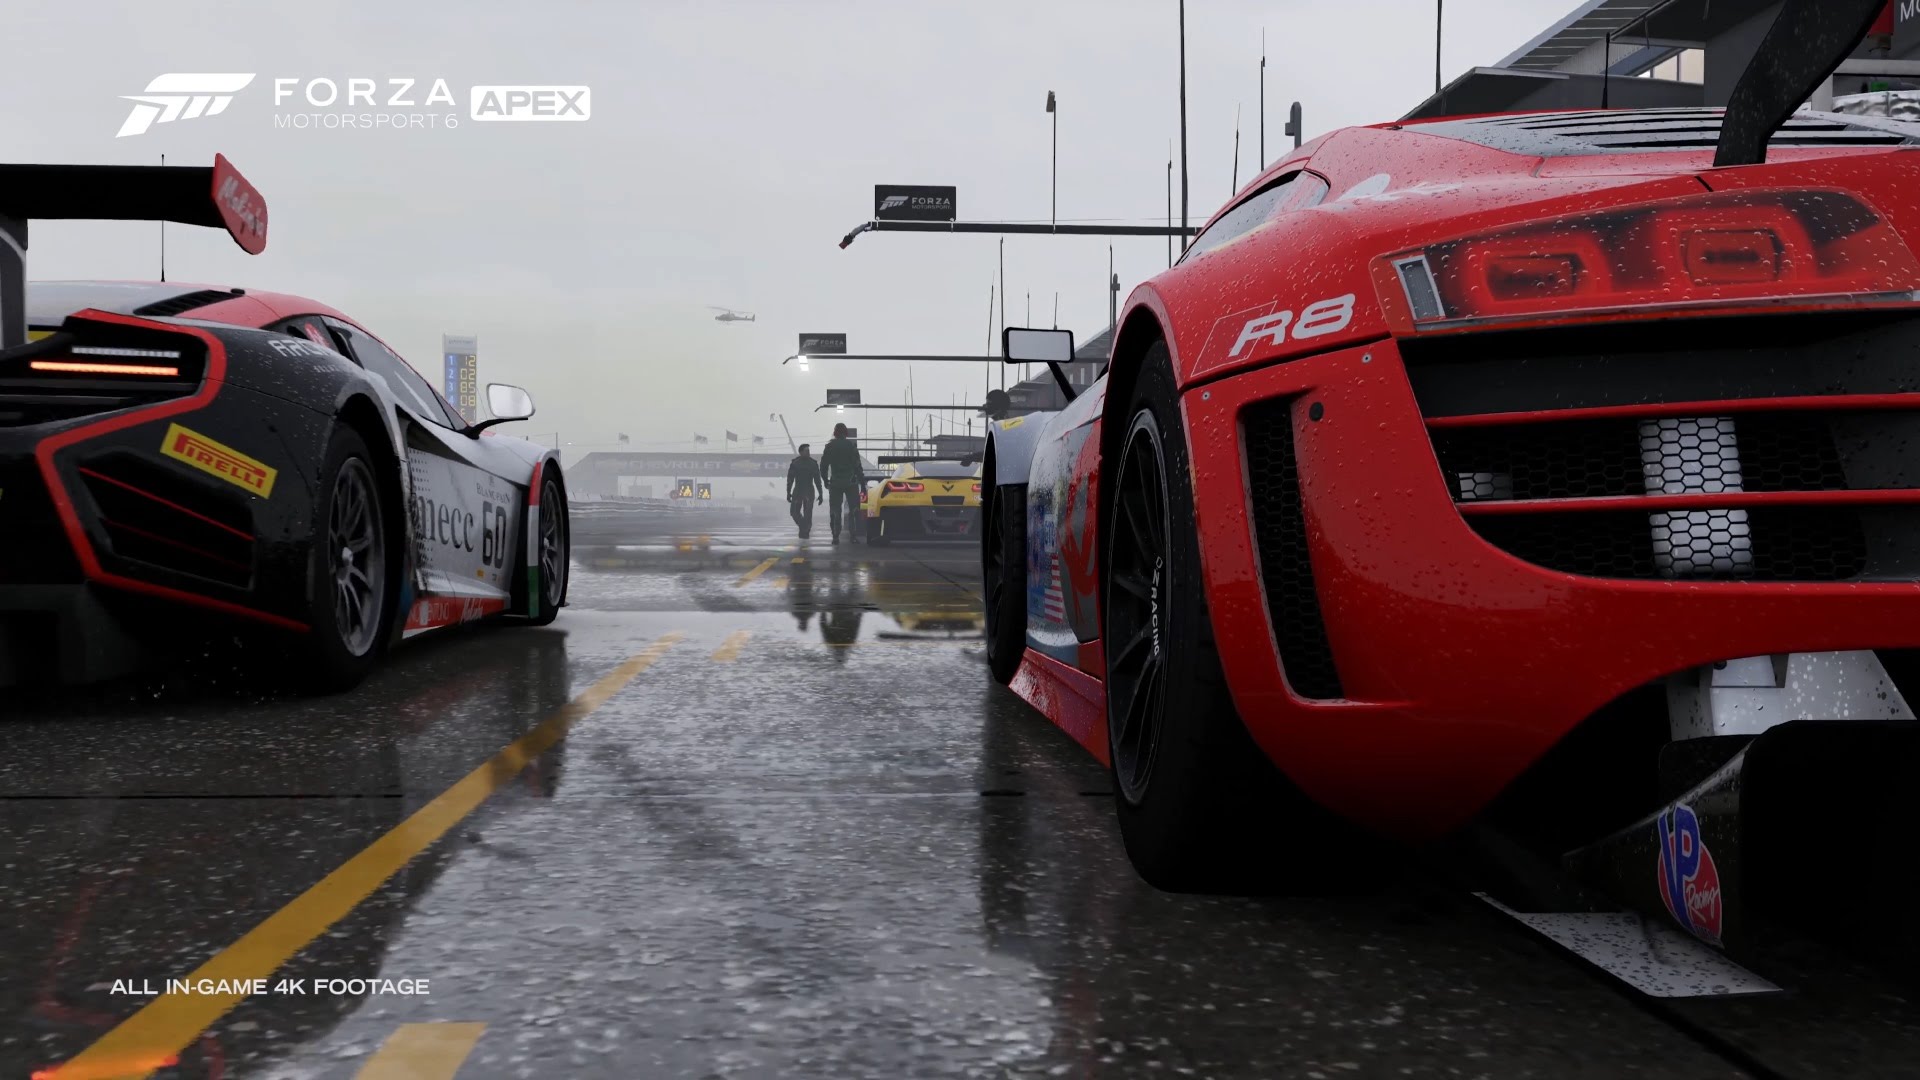 Meilleurs fonds d'écran Forza Motorsport 6 : Apex pour l'écran du téléphone